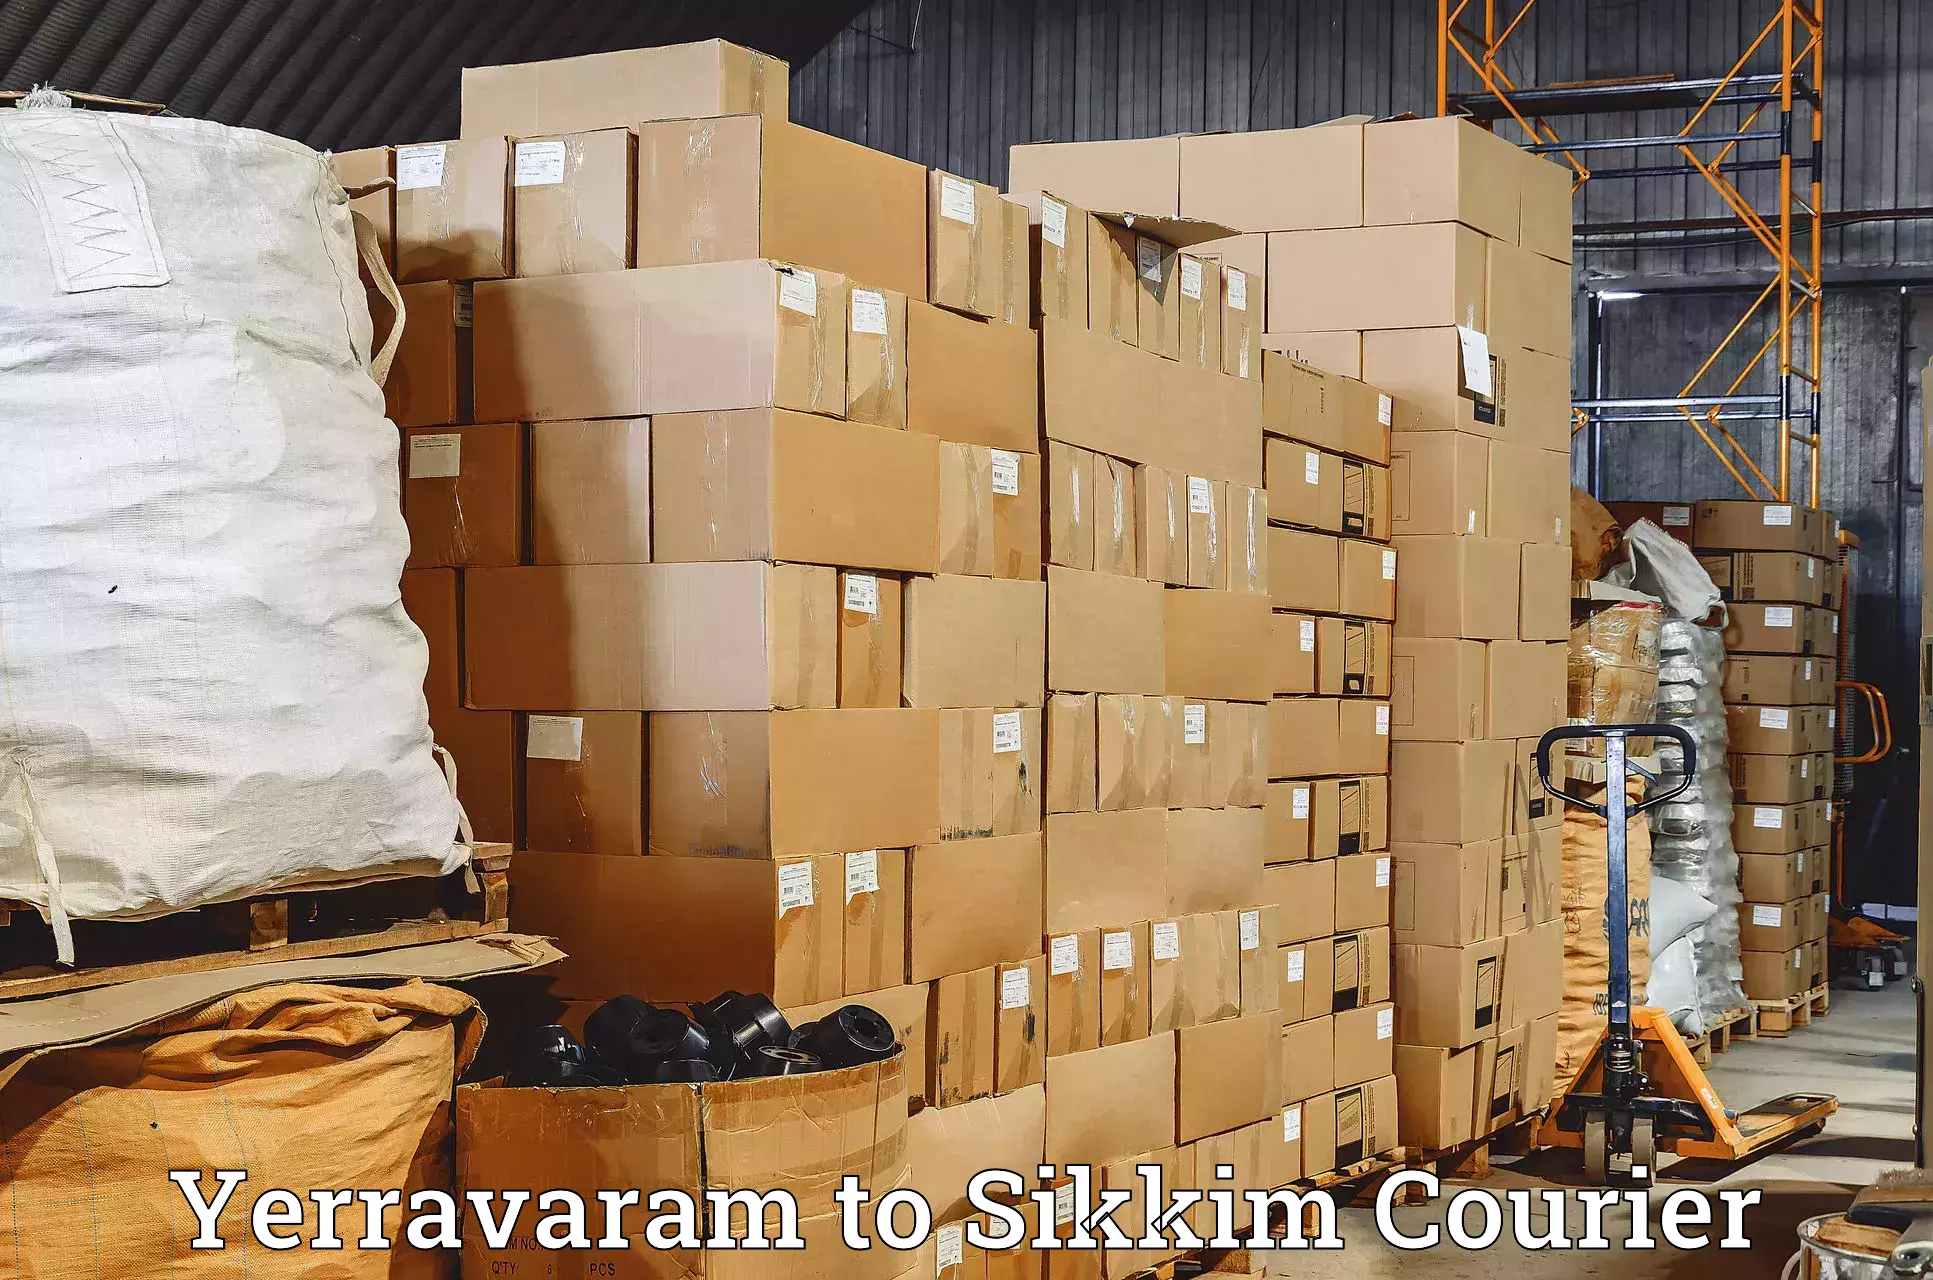 User-friendly courier app Yerravaram to Pelling